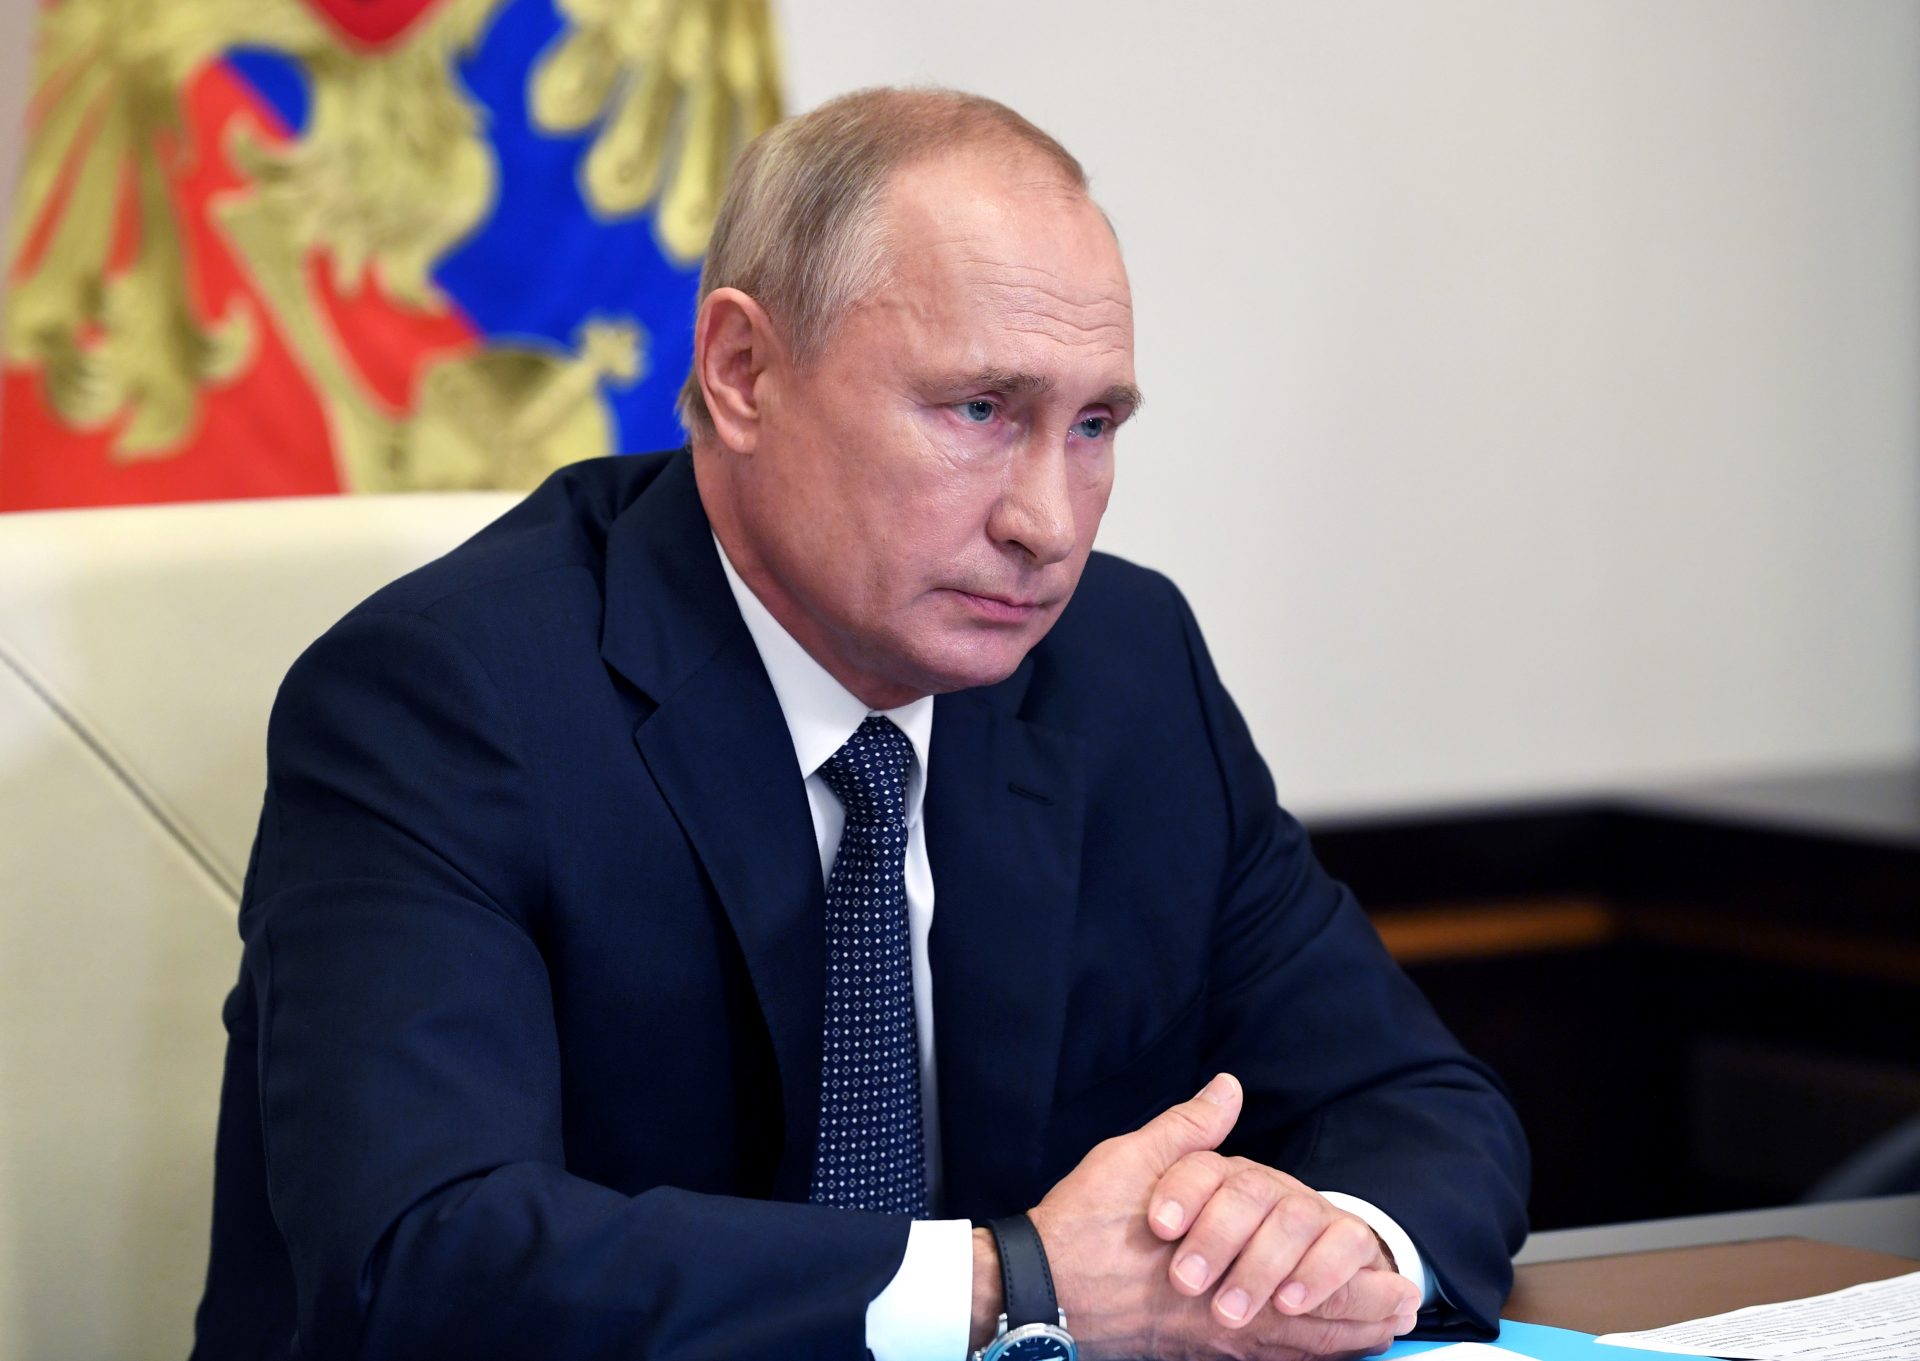 Putin karantinə alınır? – Kremldən açıqlama - VİDEO